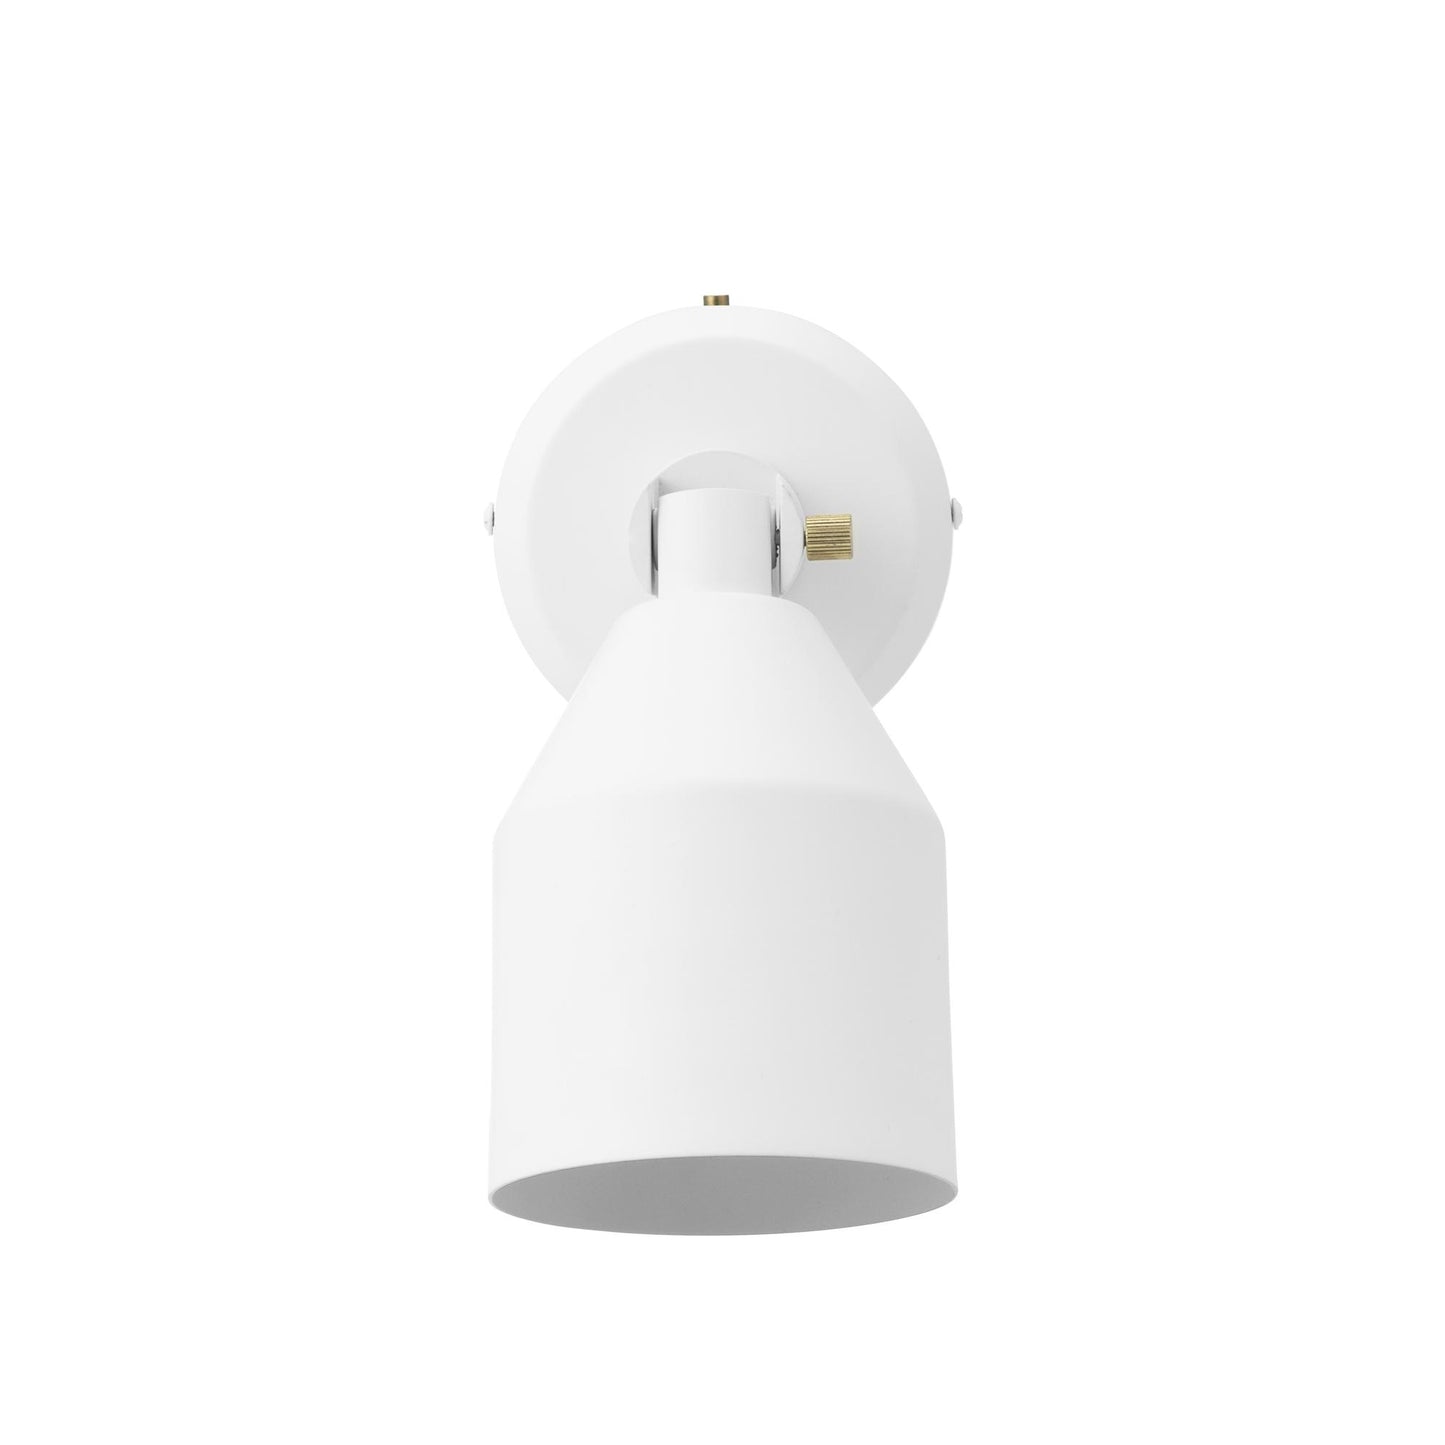 Klip Wall Lamp by Normann Copenhagen #White